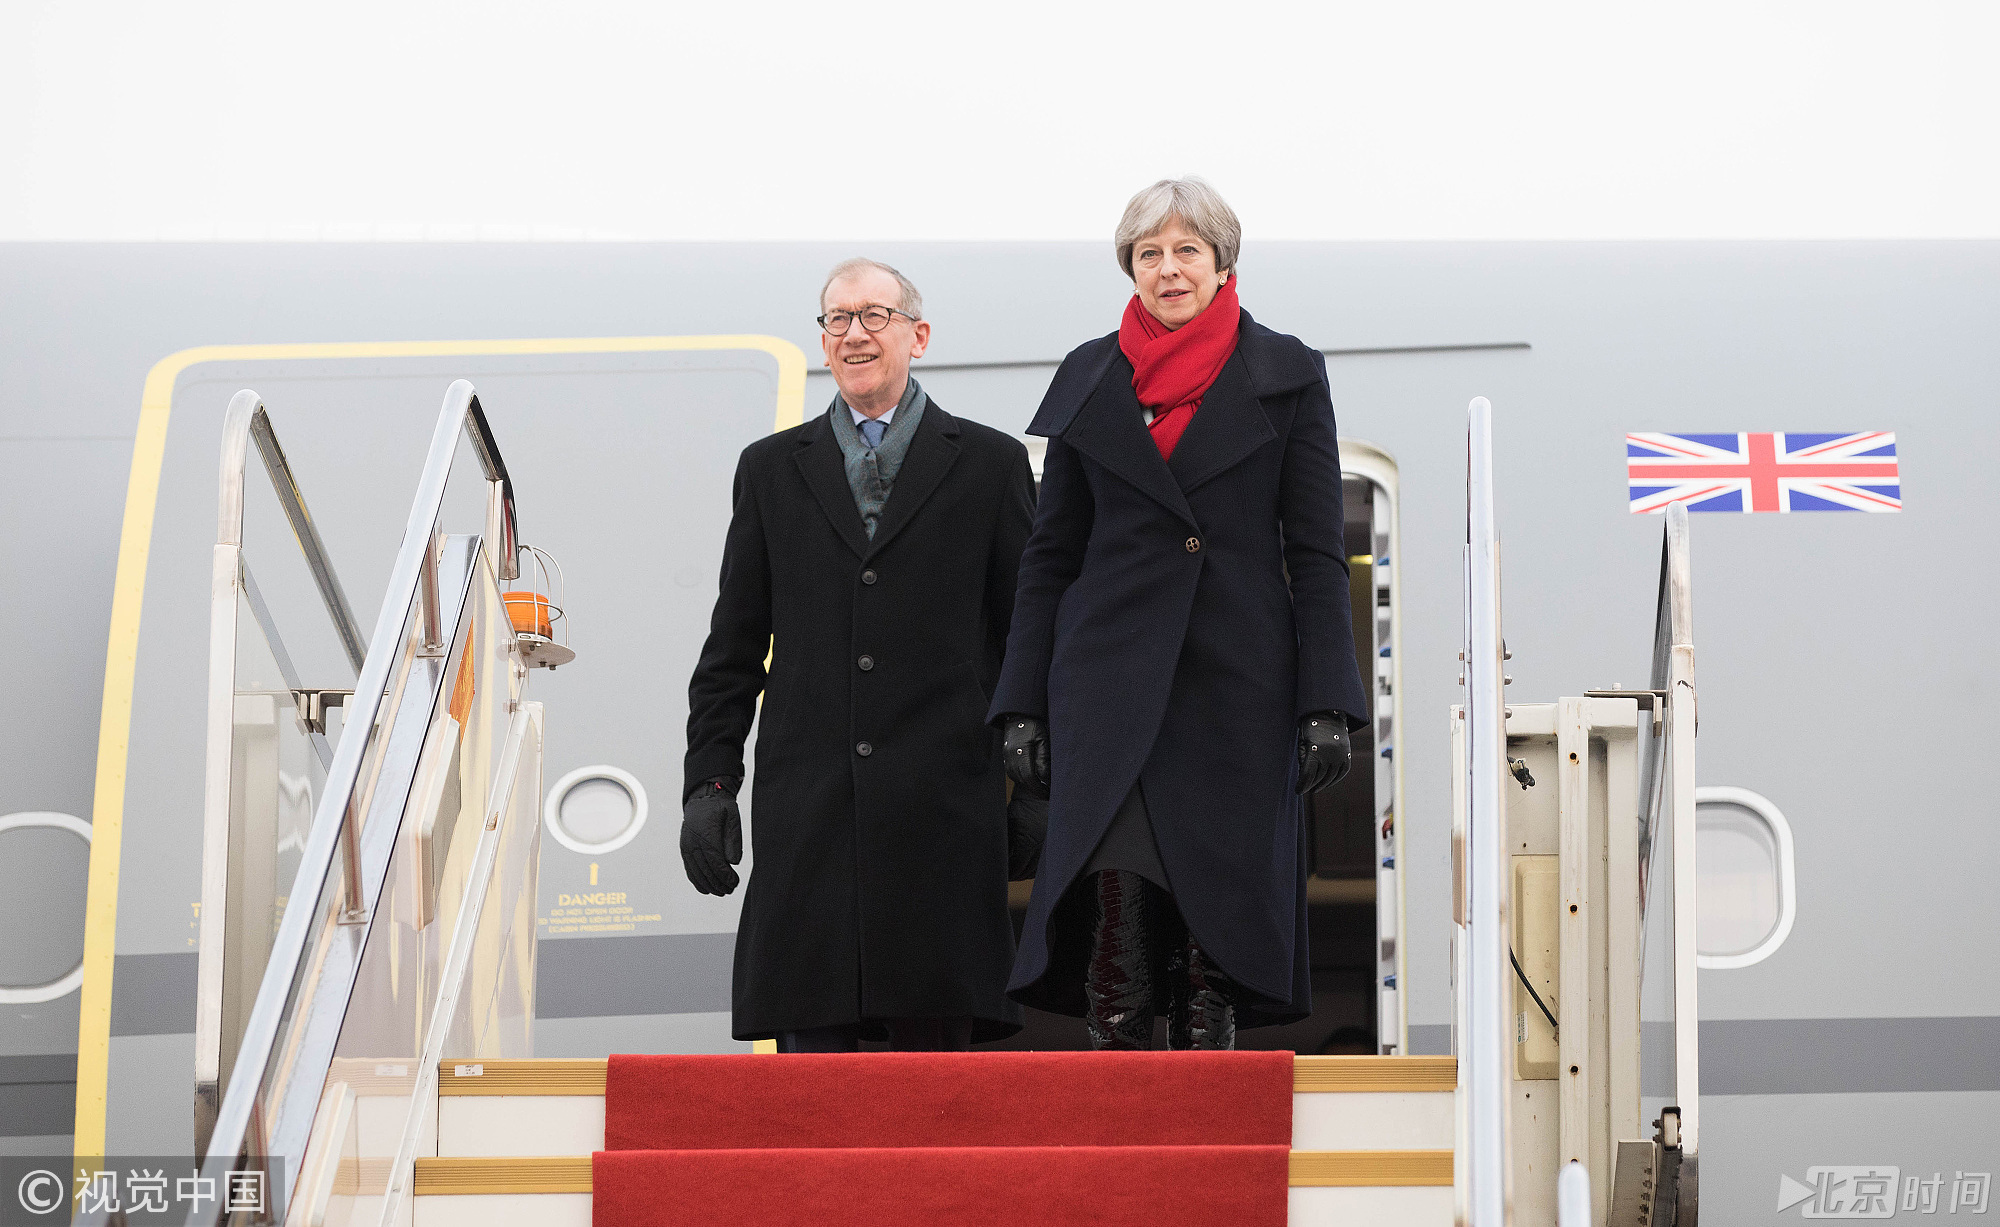 2018年1月31日,武汉,英国首相特蕾莎·梅抵达武汉机场,开始访华